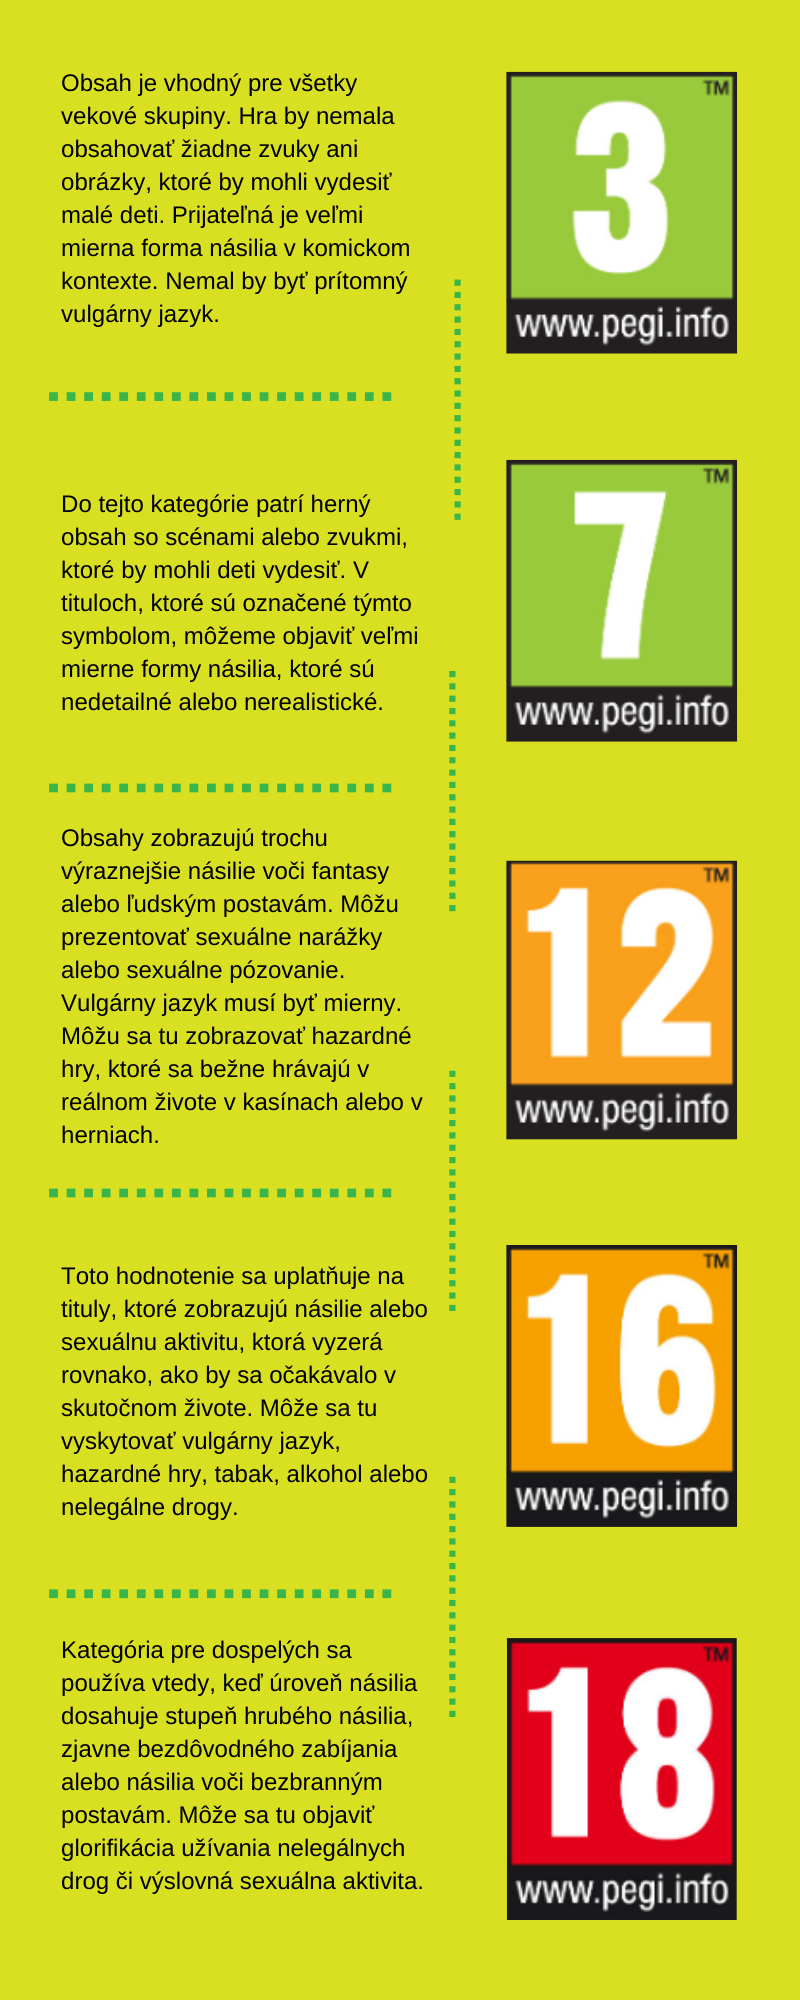 Infografika ku ratingovým kategóriám spoločnosti PEGI.